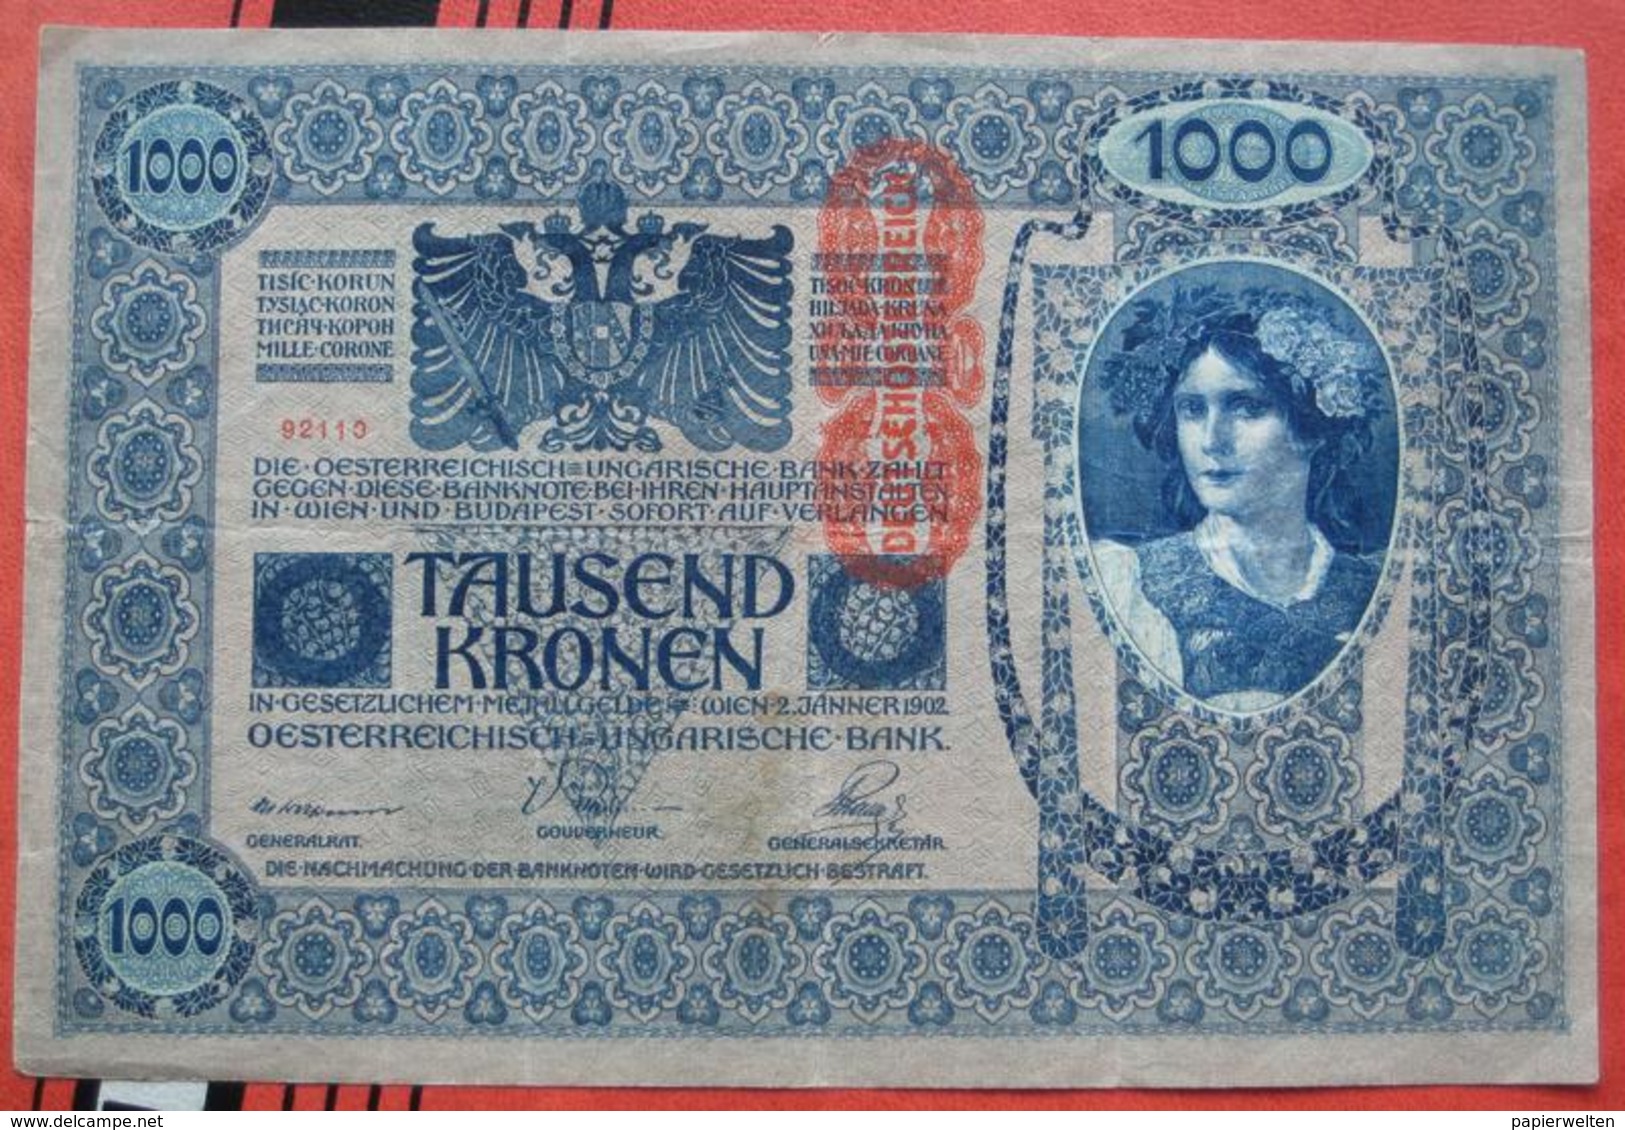 1000 Kronen 2.1.1902 (WPM 59) - Overprint / Überdruck "Deutschösterreich" - Austria